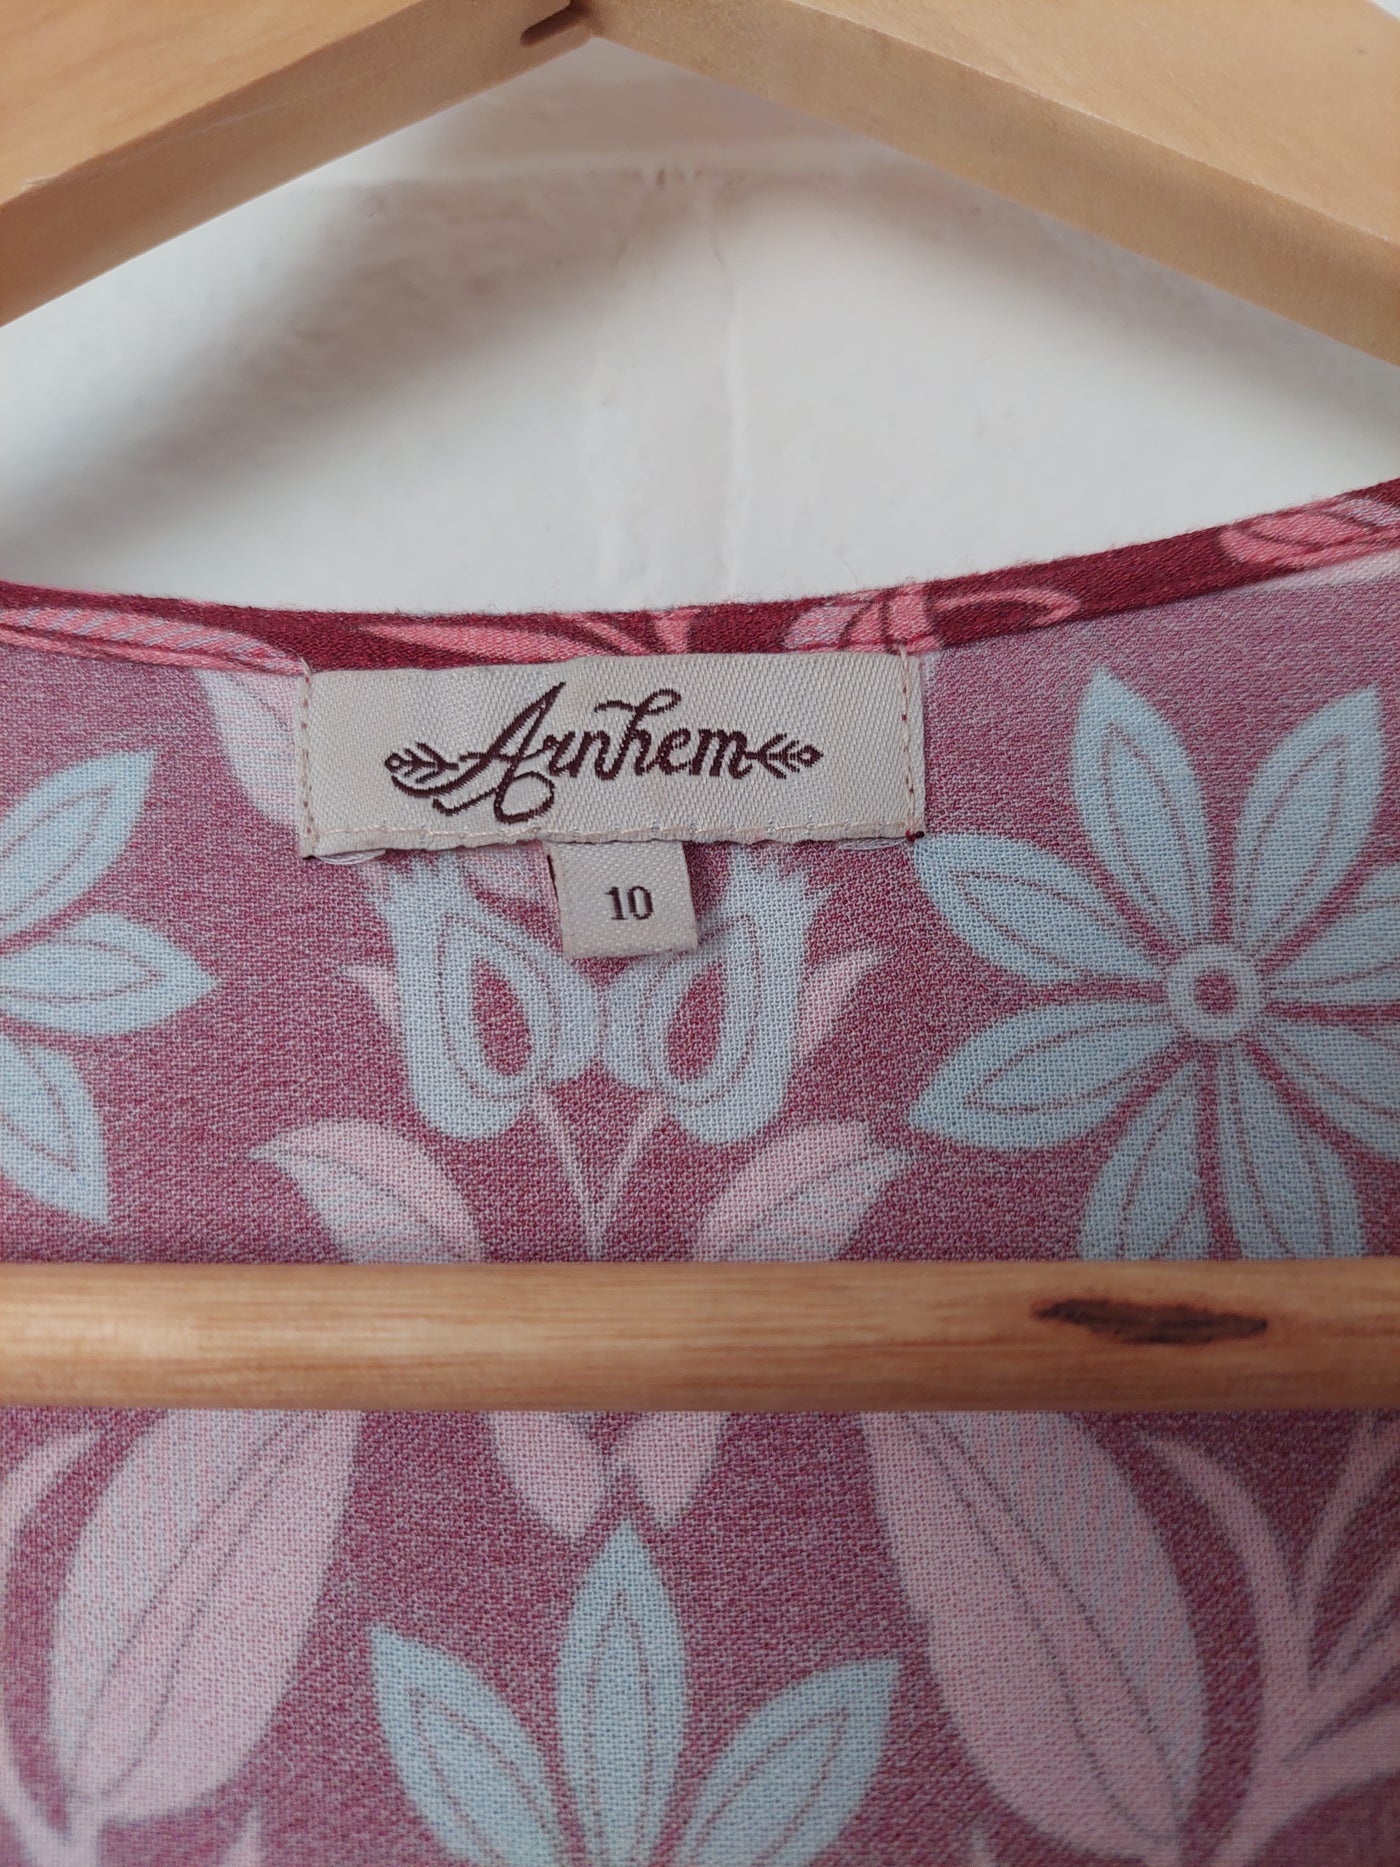 Arnhem Clothing Marigold Midi Wrap Dress in Rhubarb, Size 10